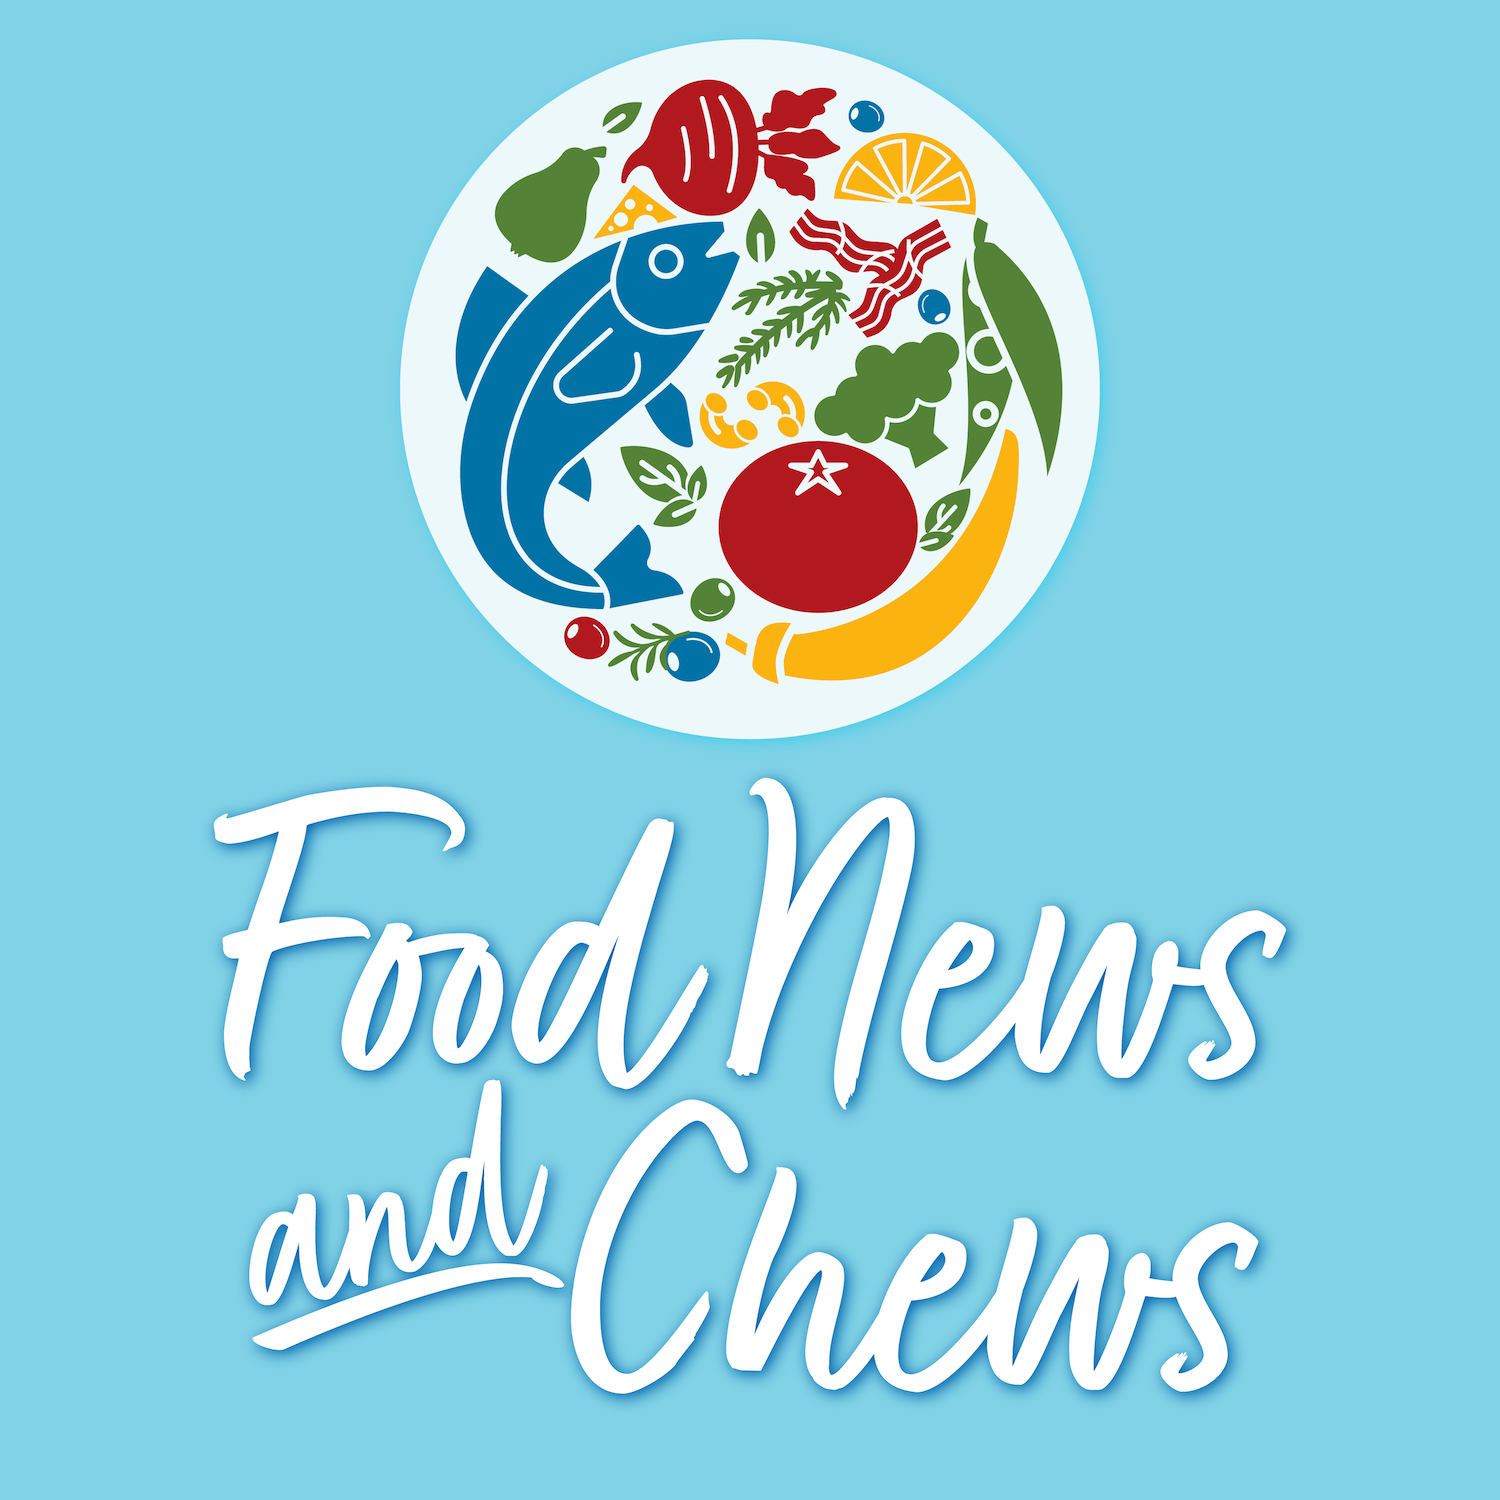 Food News and Chews